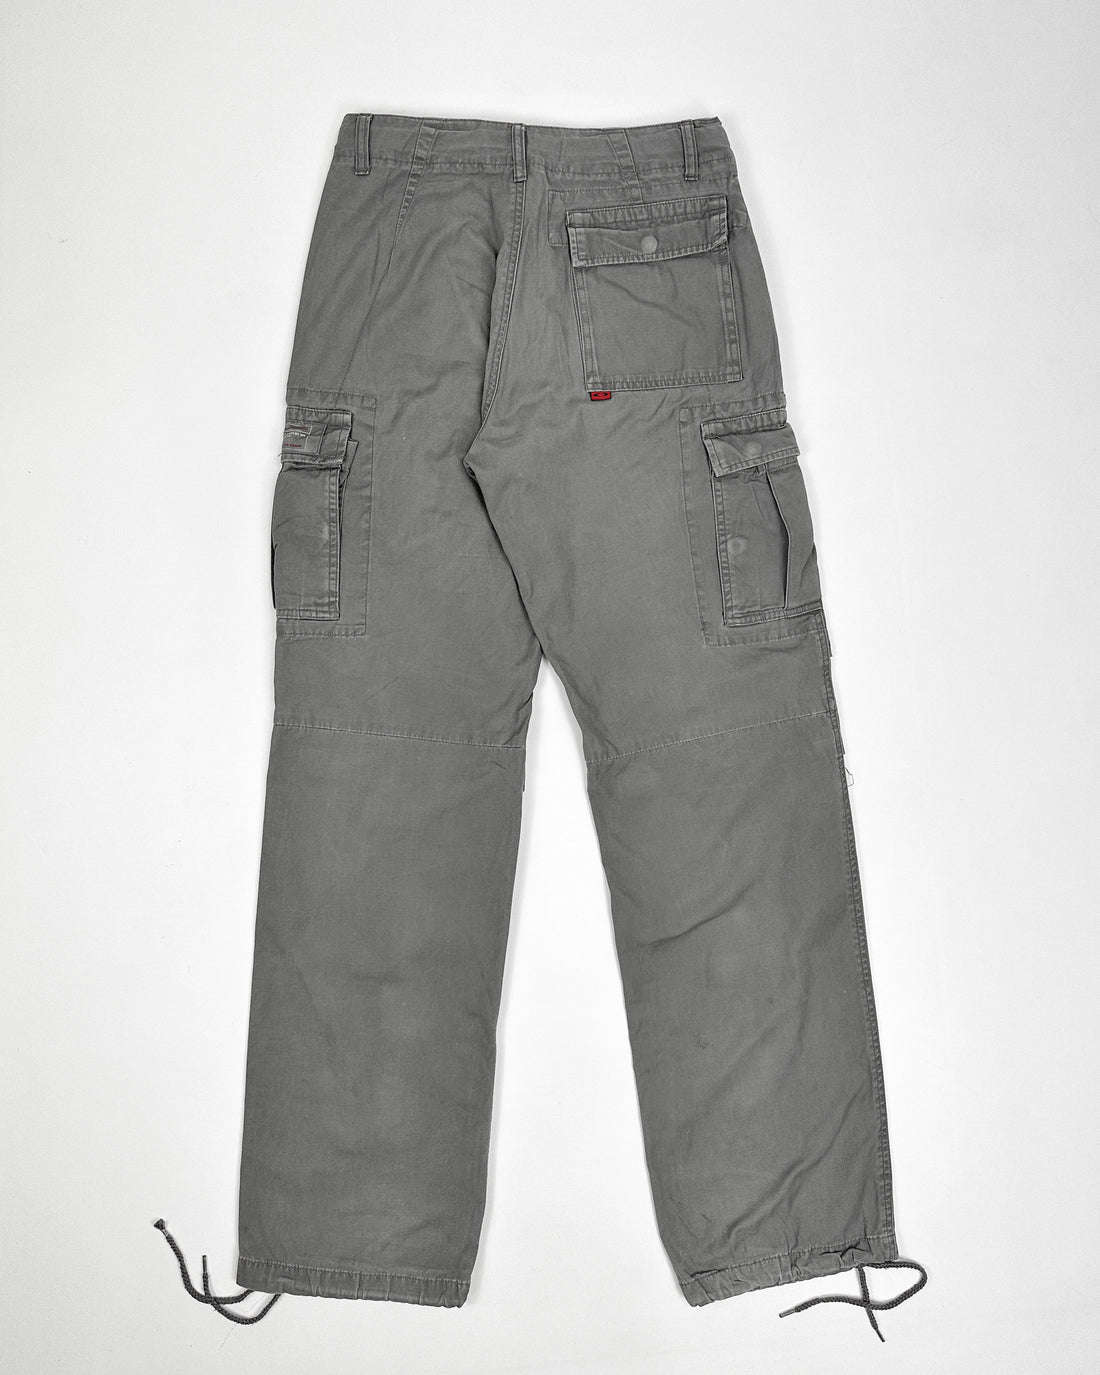 Oakley Red Core Grey Cargo Pants 2000's